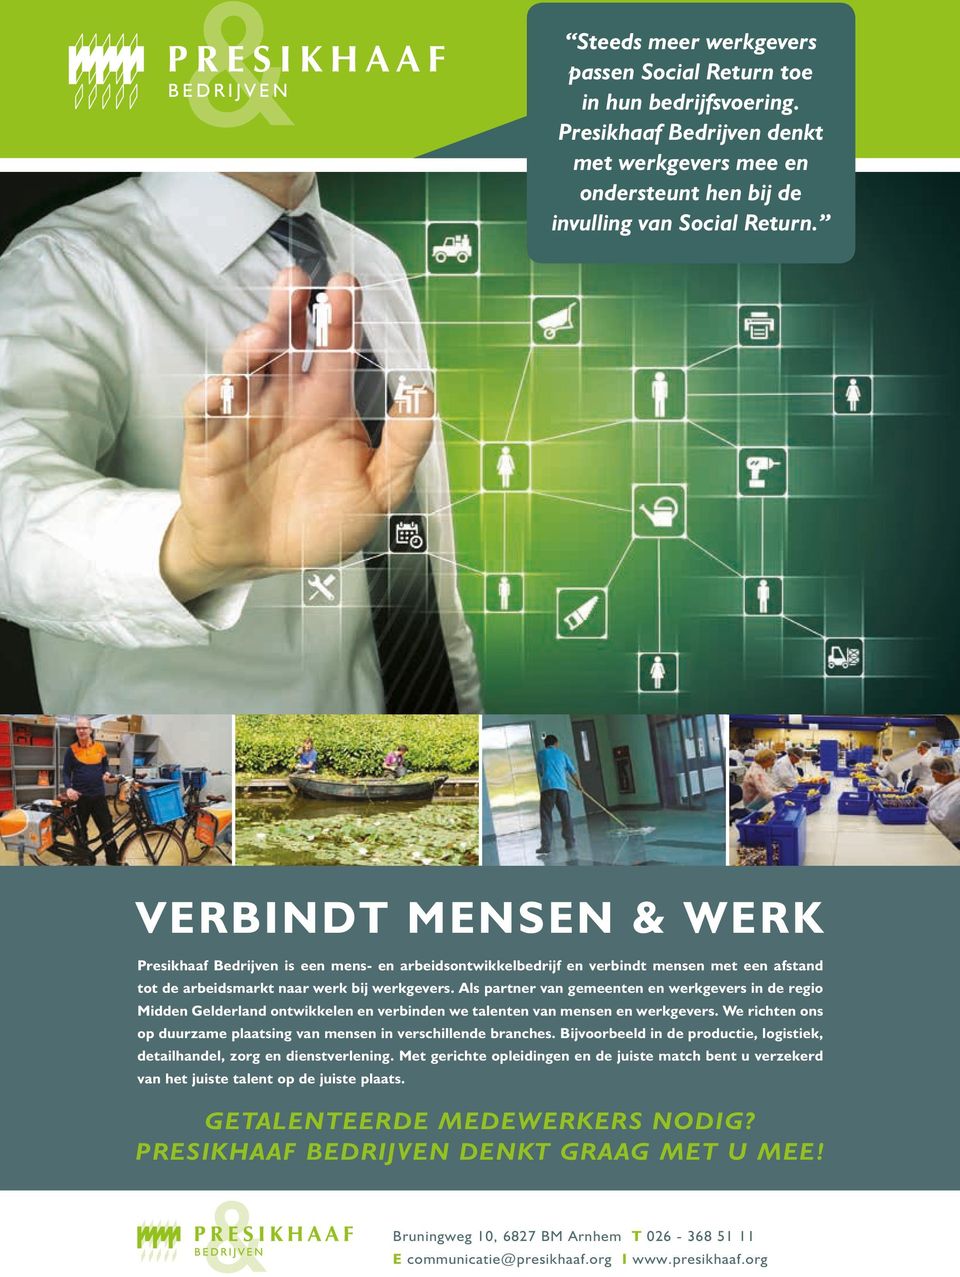 Als partner van gemeenten en werkgevers in de regio Midden Gelderland ontwikkelen en verbinden we talenten van mensen en werkgevers.